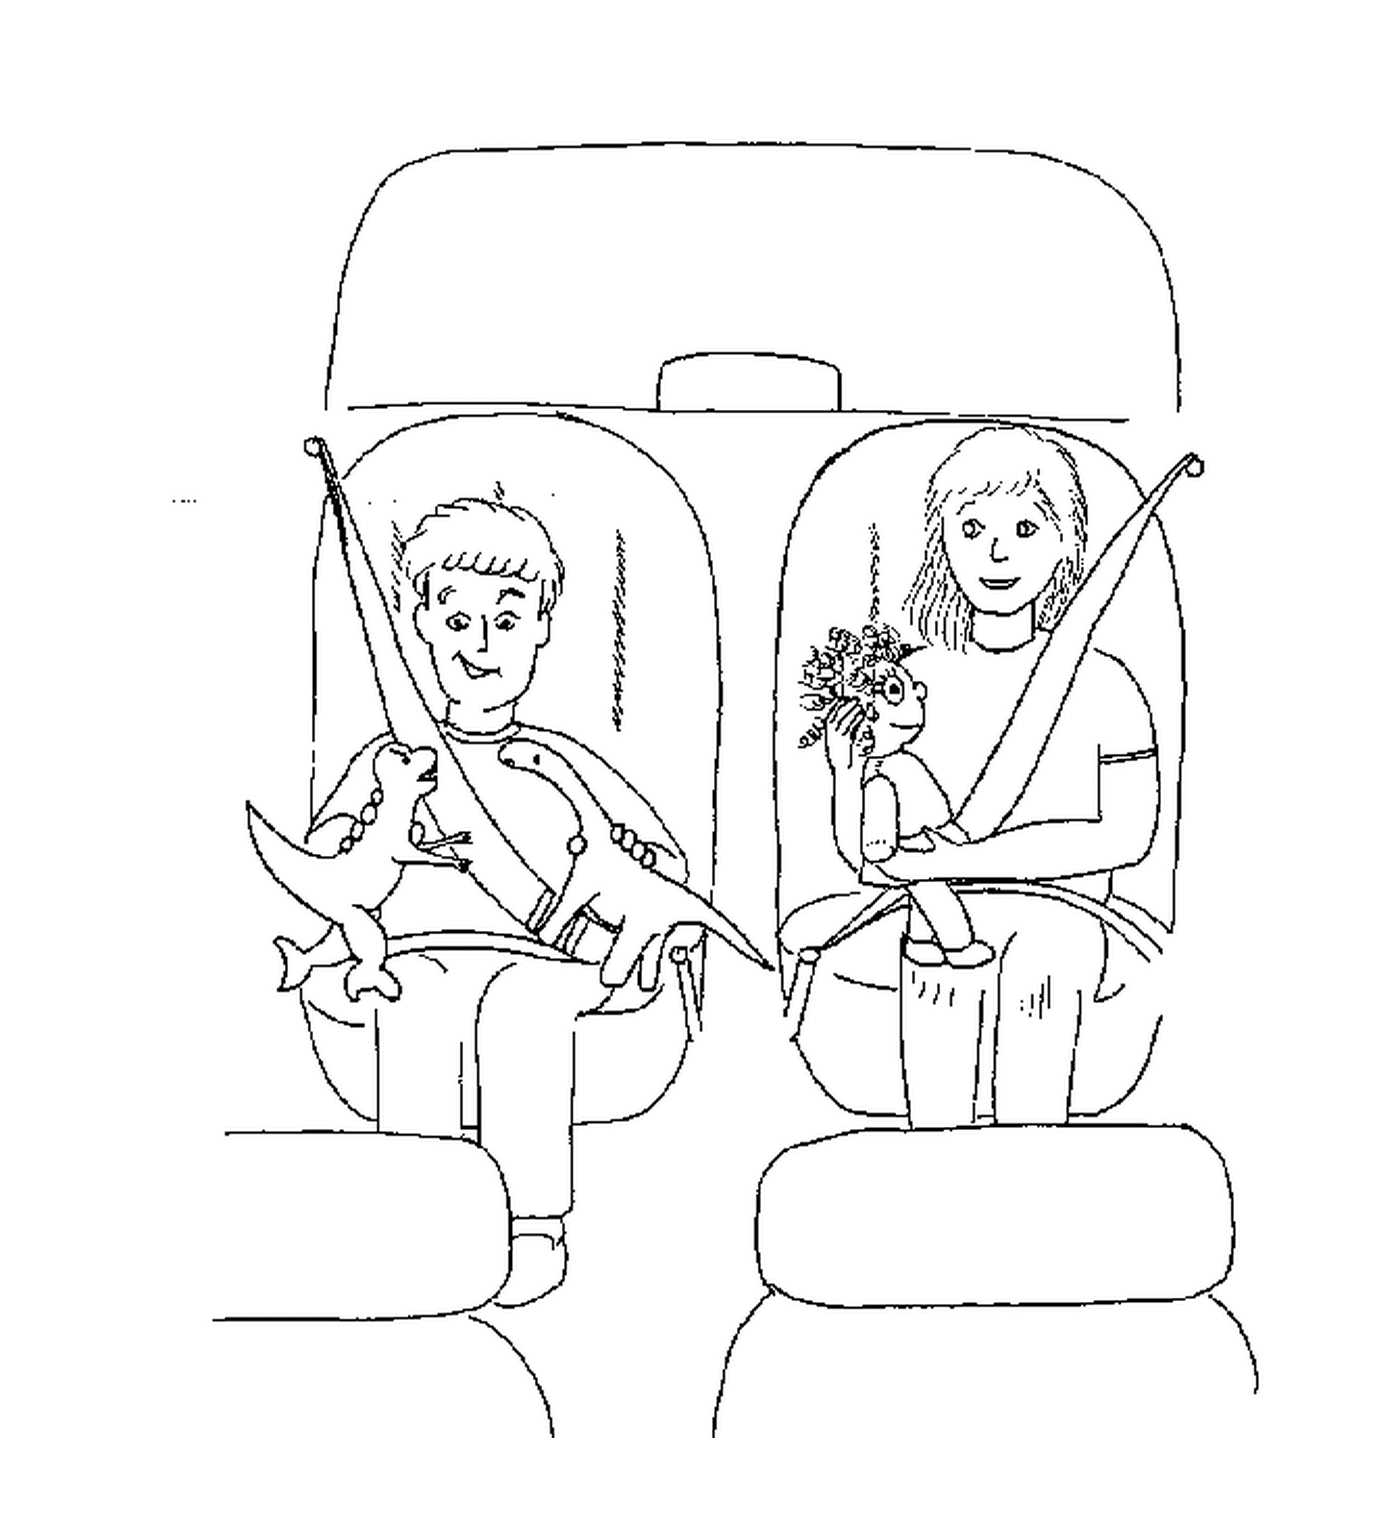  两个人坐在车里 